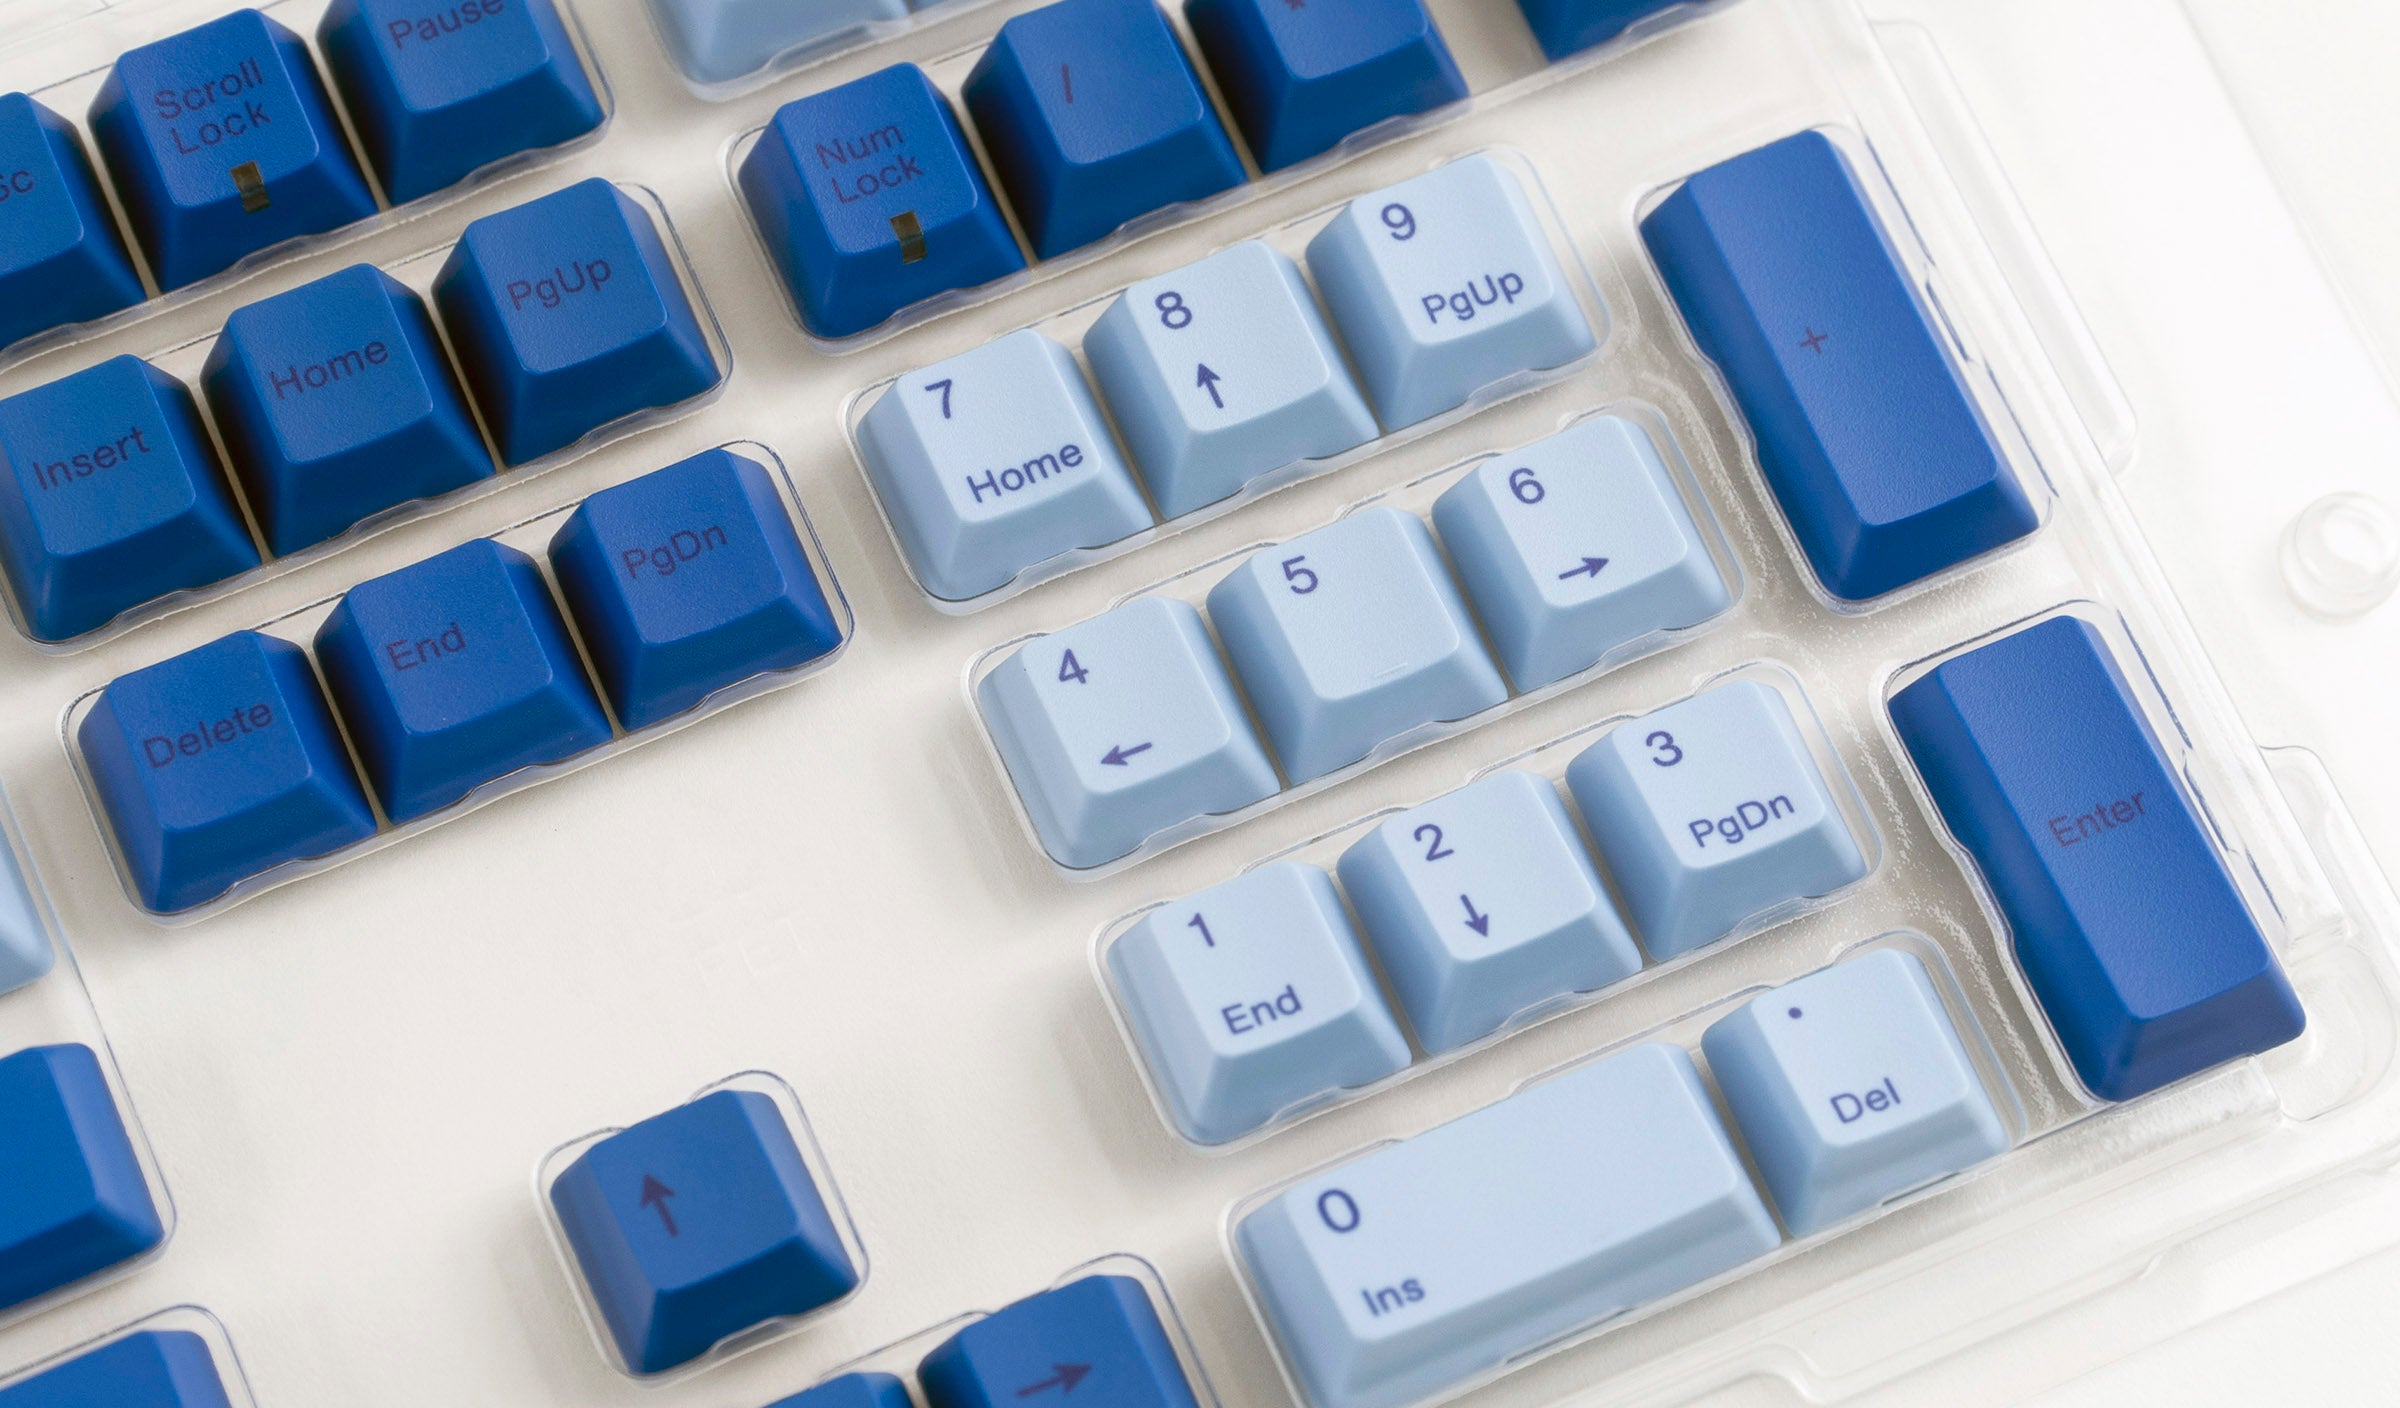 Varmilo 108 Key Dye Sub PBT Keycap Set Blue and Light Blue MKPGX0C57N |34126|